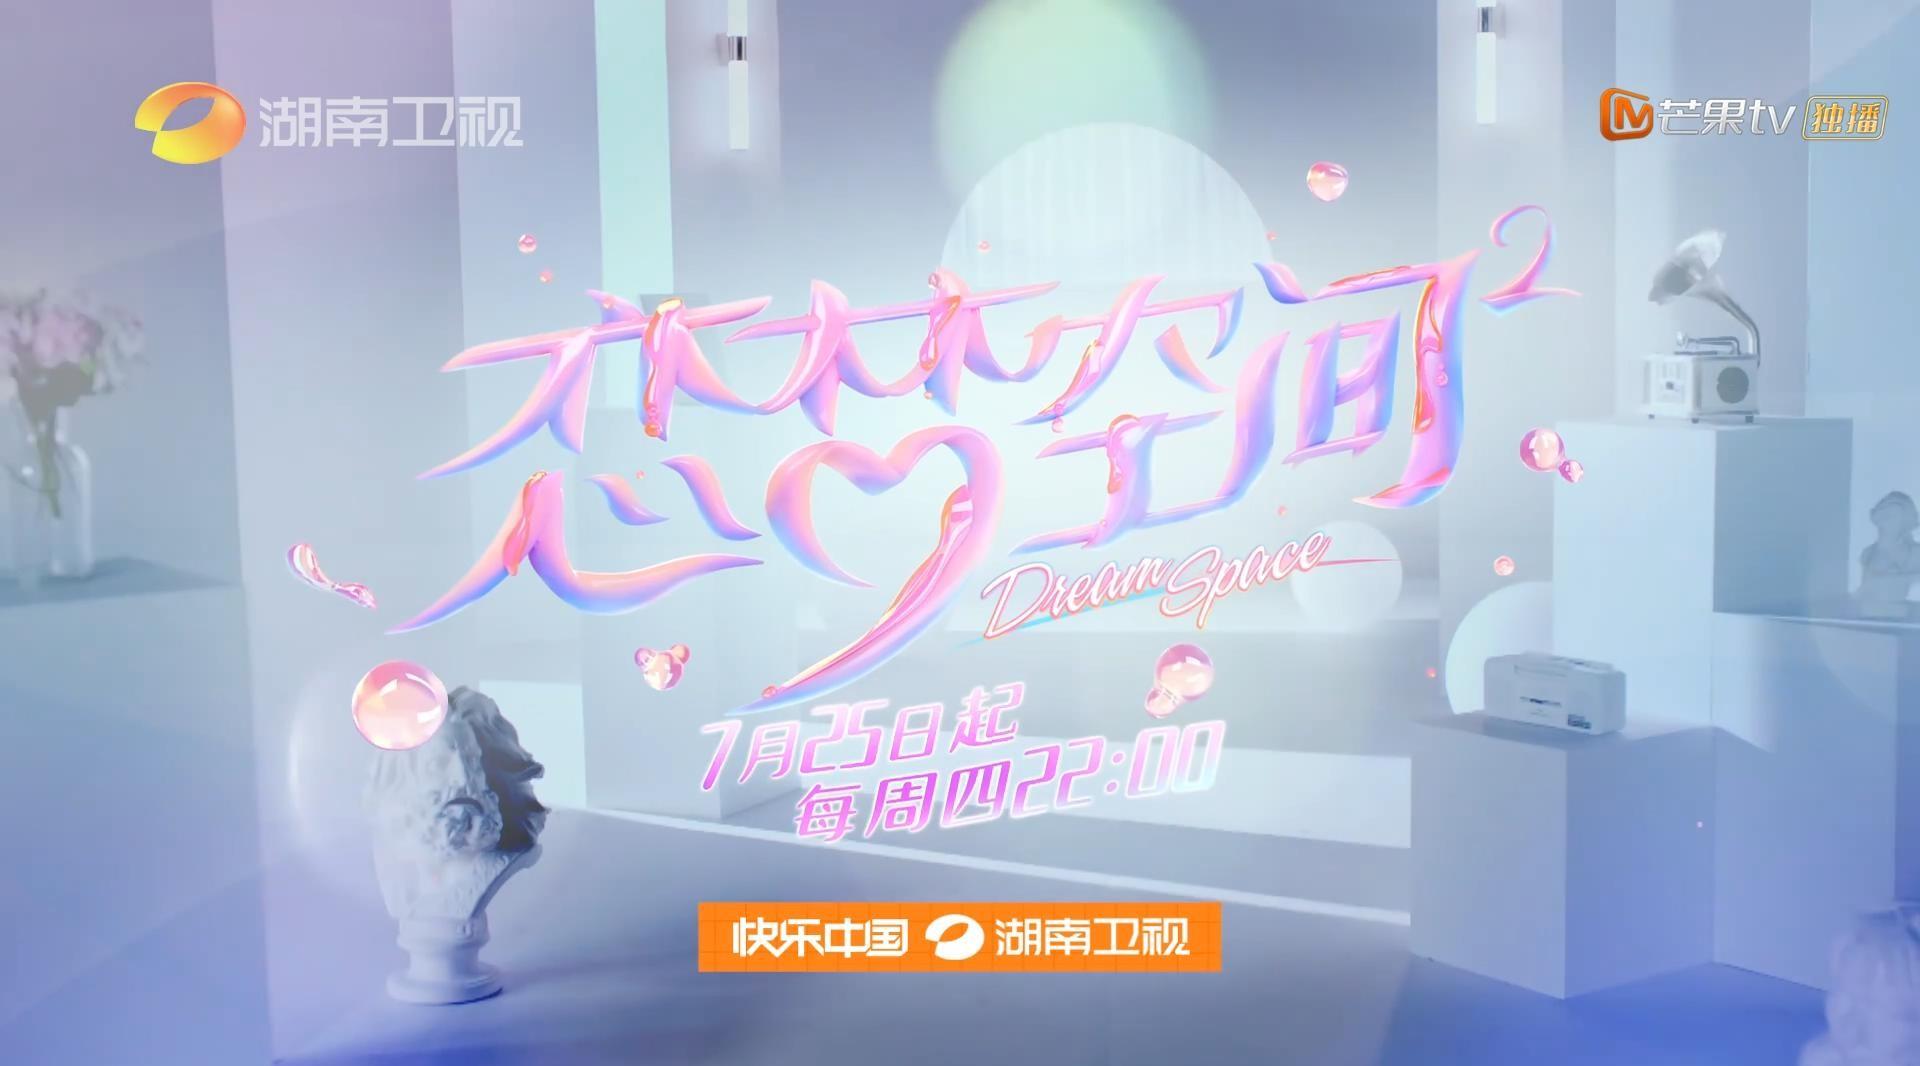 湖南卫视《恋梦空间2》概念宣传片